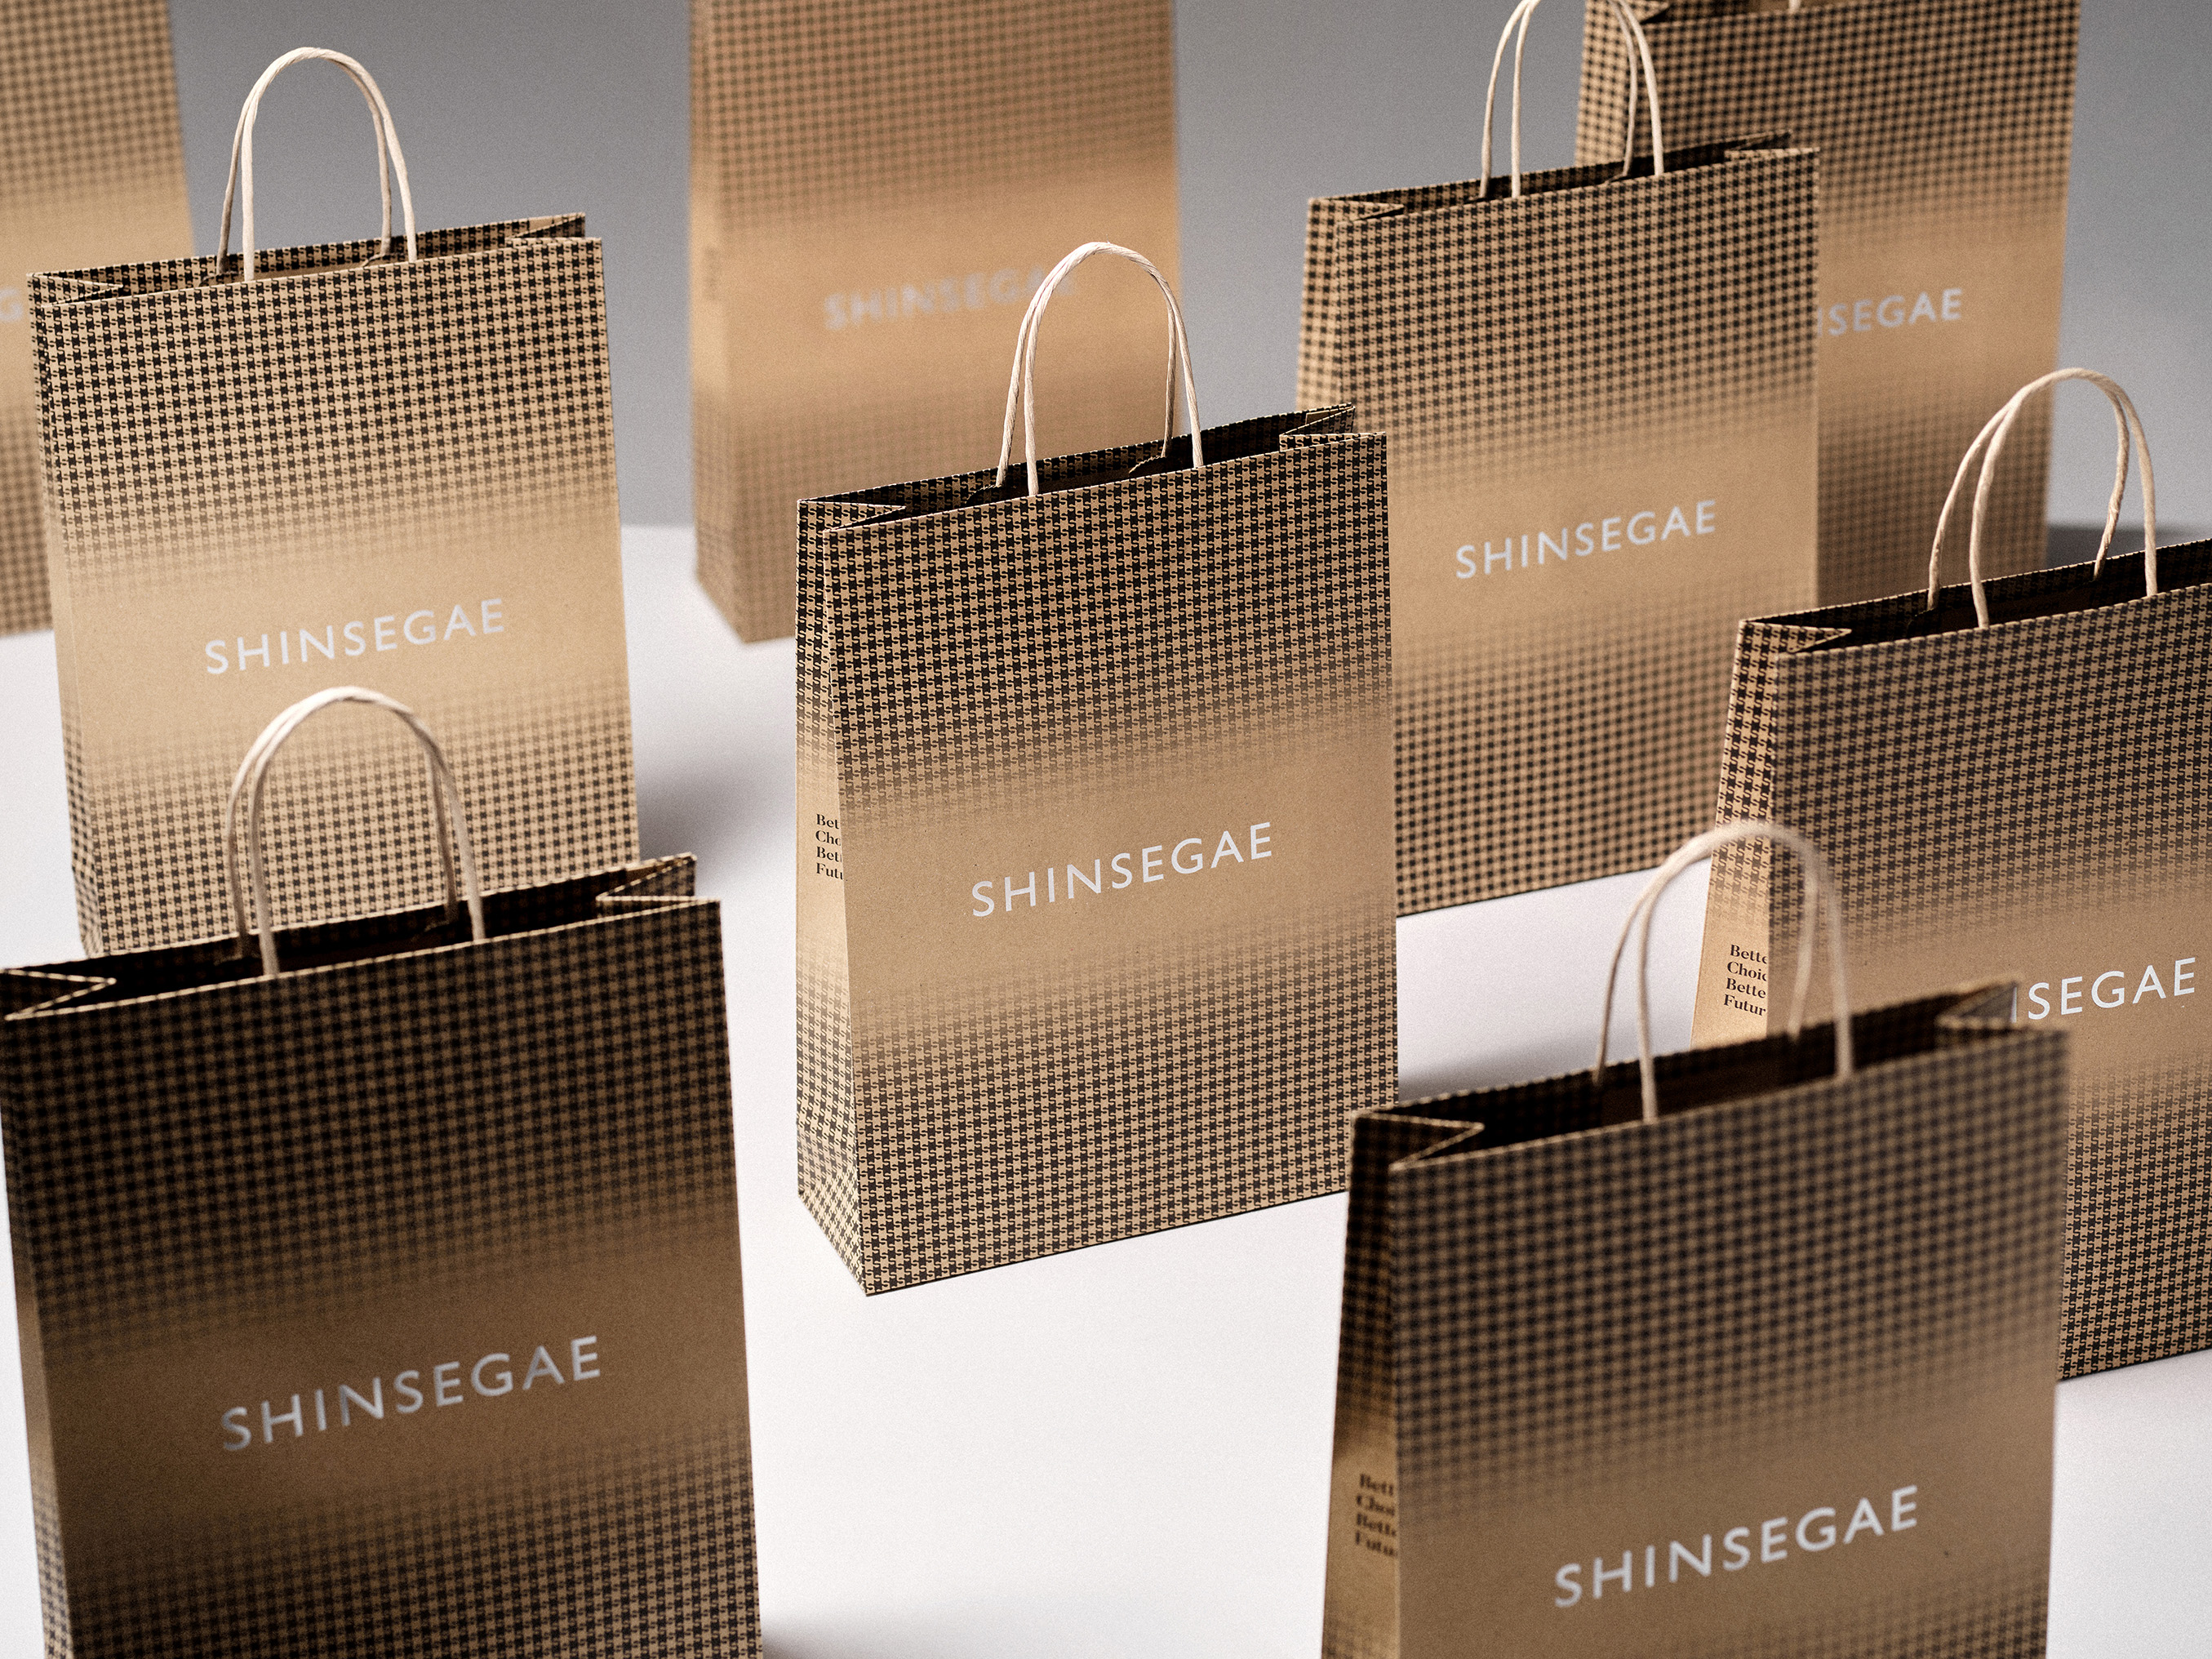 SHINSEGAE closed-loop recycled packaging